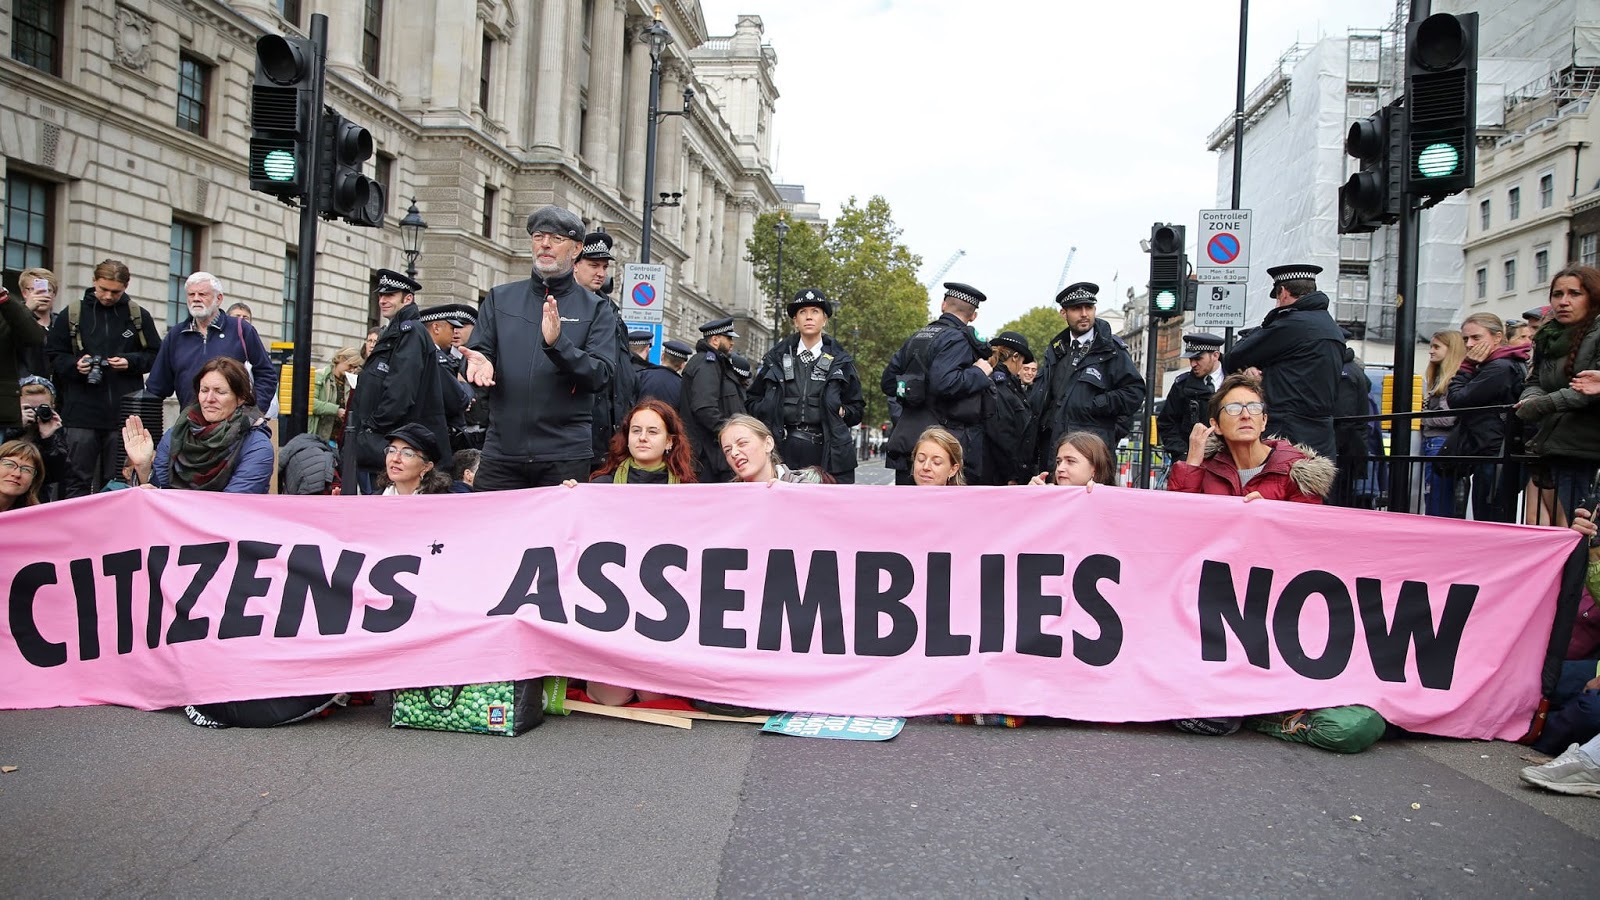 Imagem de manifestantes bloqueando uma rua com uma grande faixa com aspalavras "assembleias de cidadãosagora".